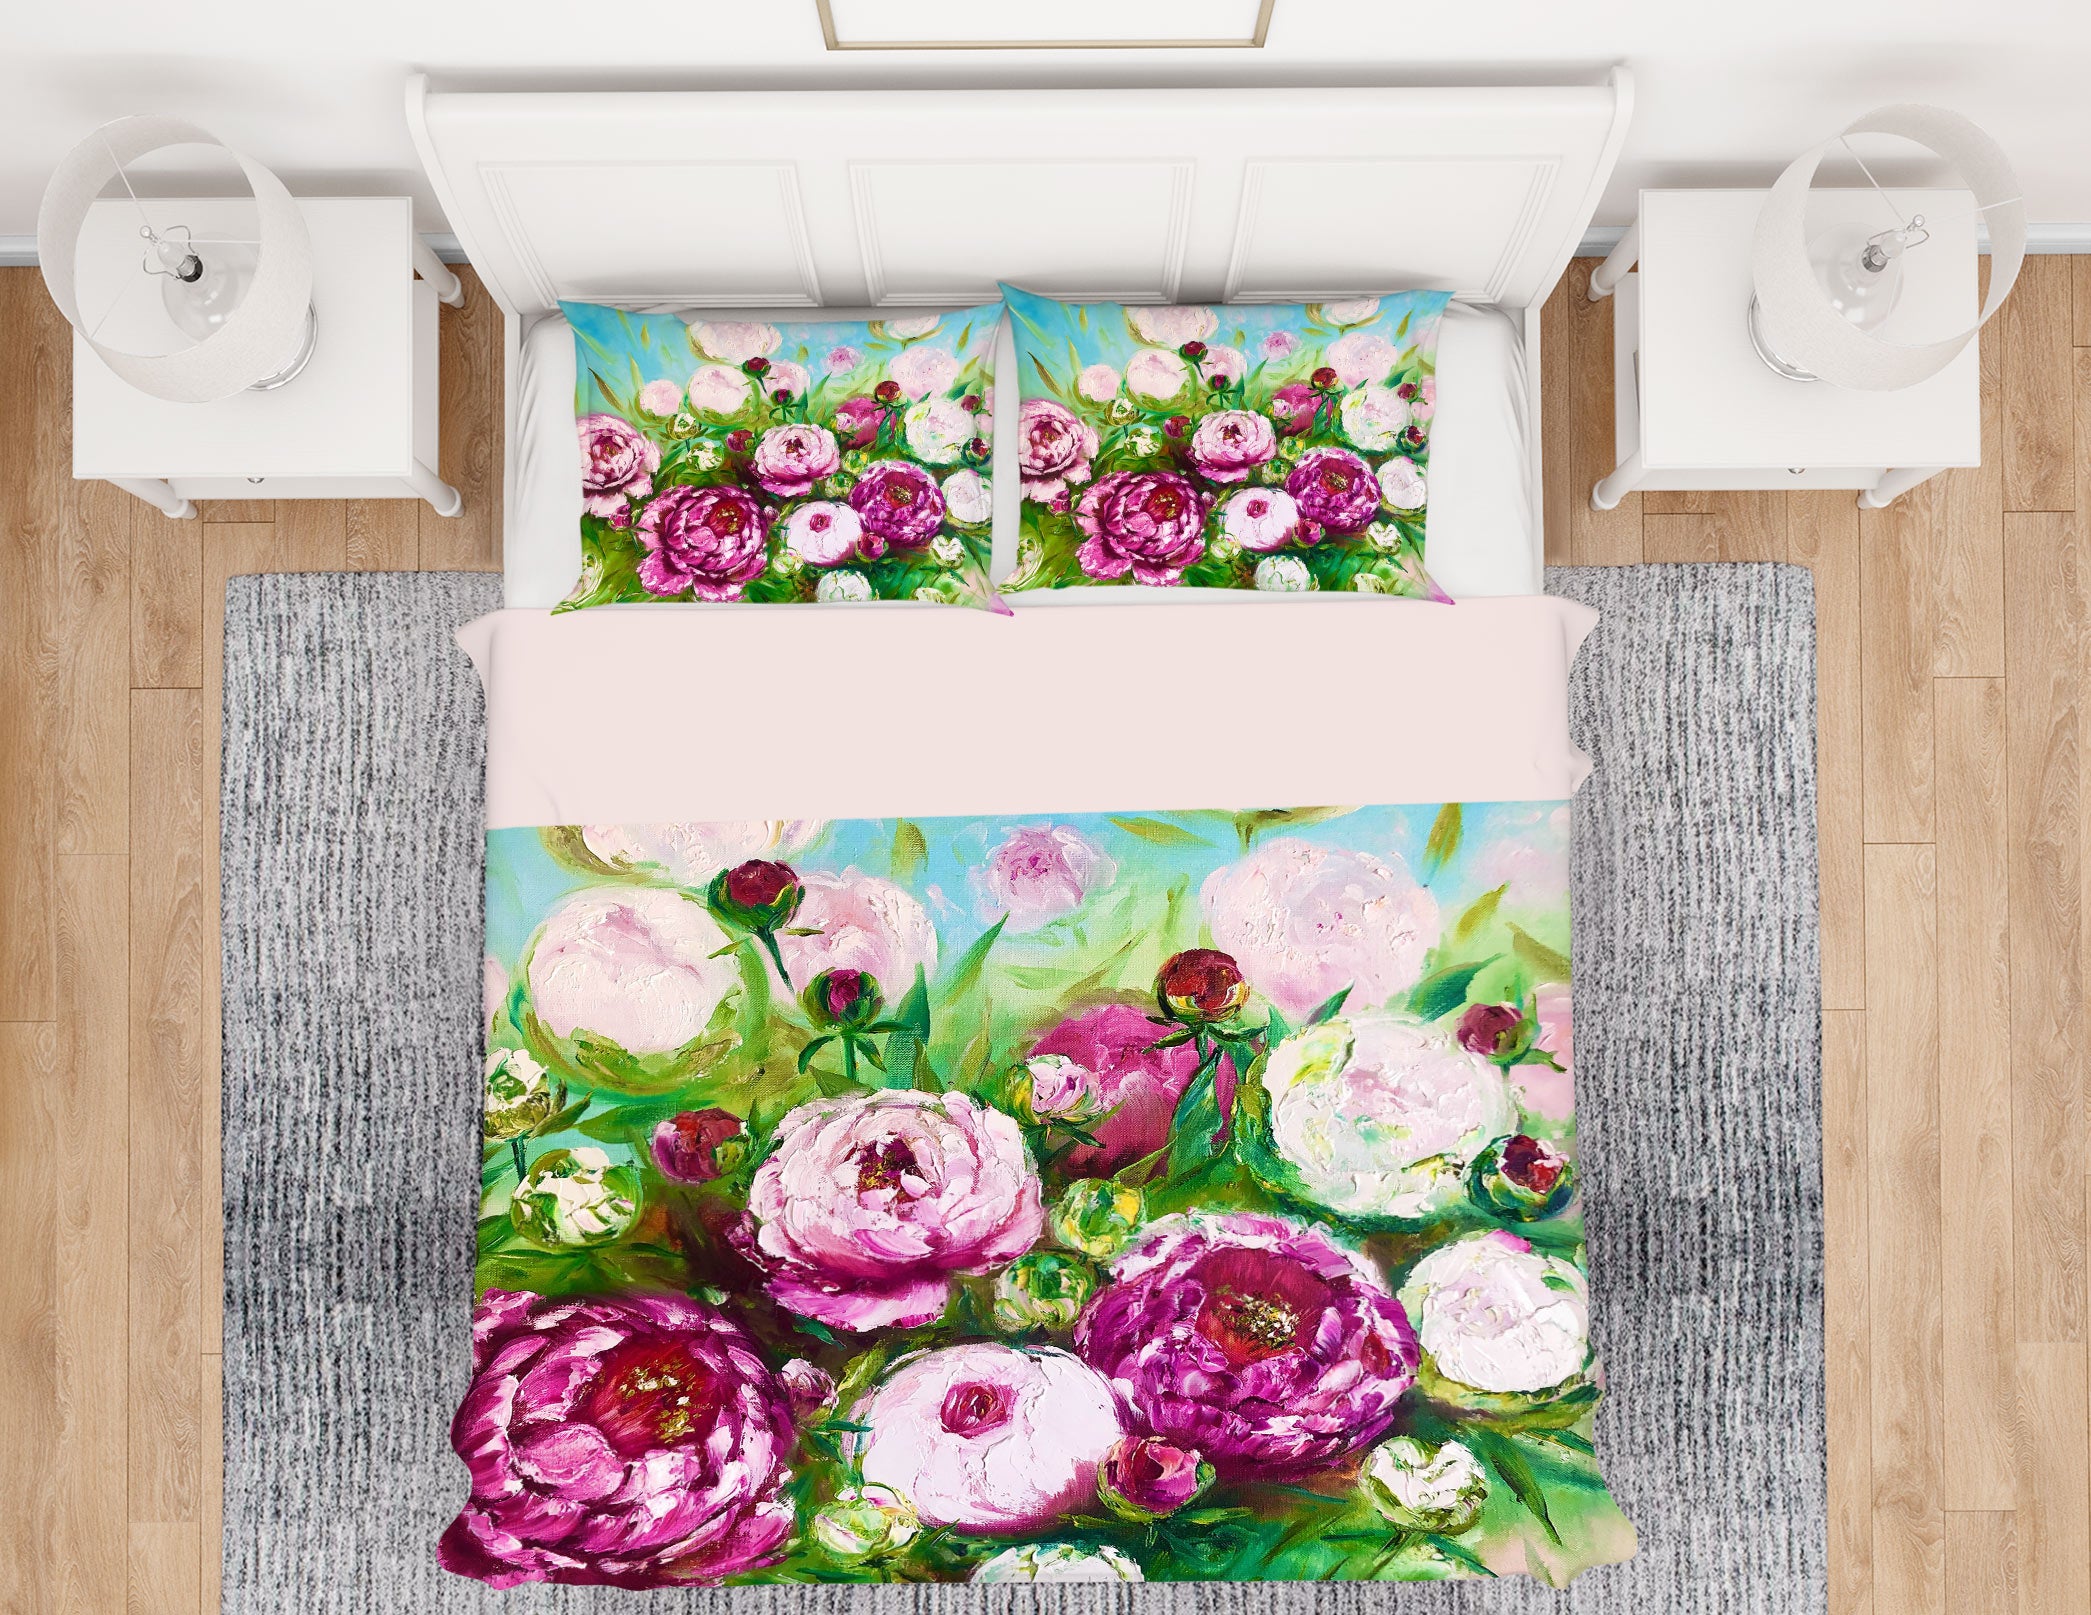 3D Pink Bouquet 433 Skromova Marina Bedding Bed Pillowcases Quilt